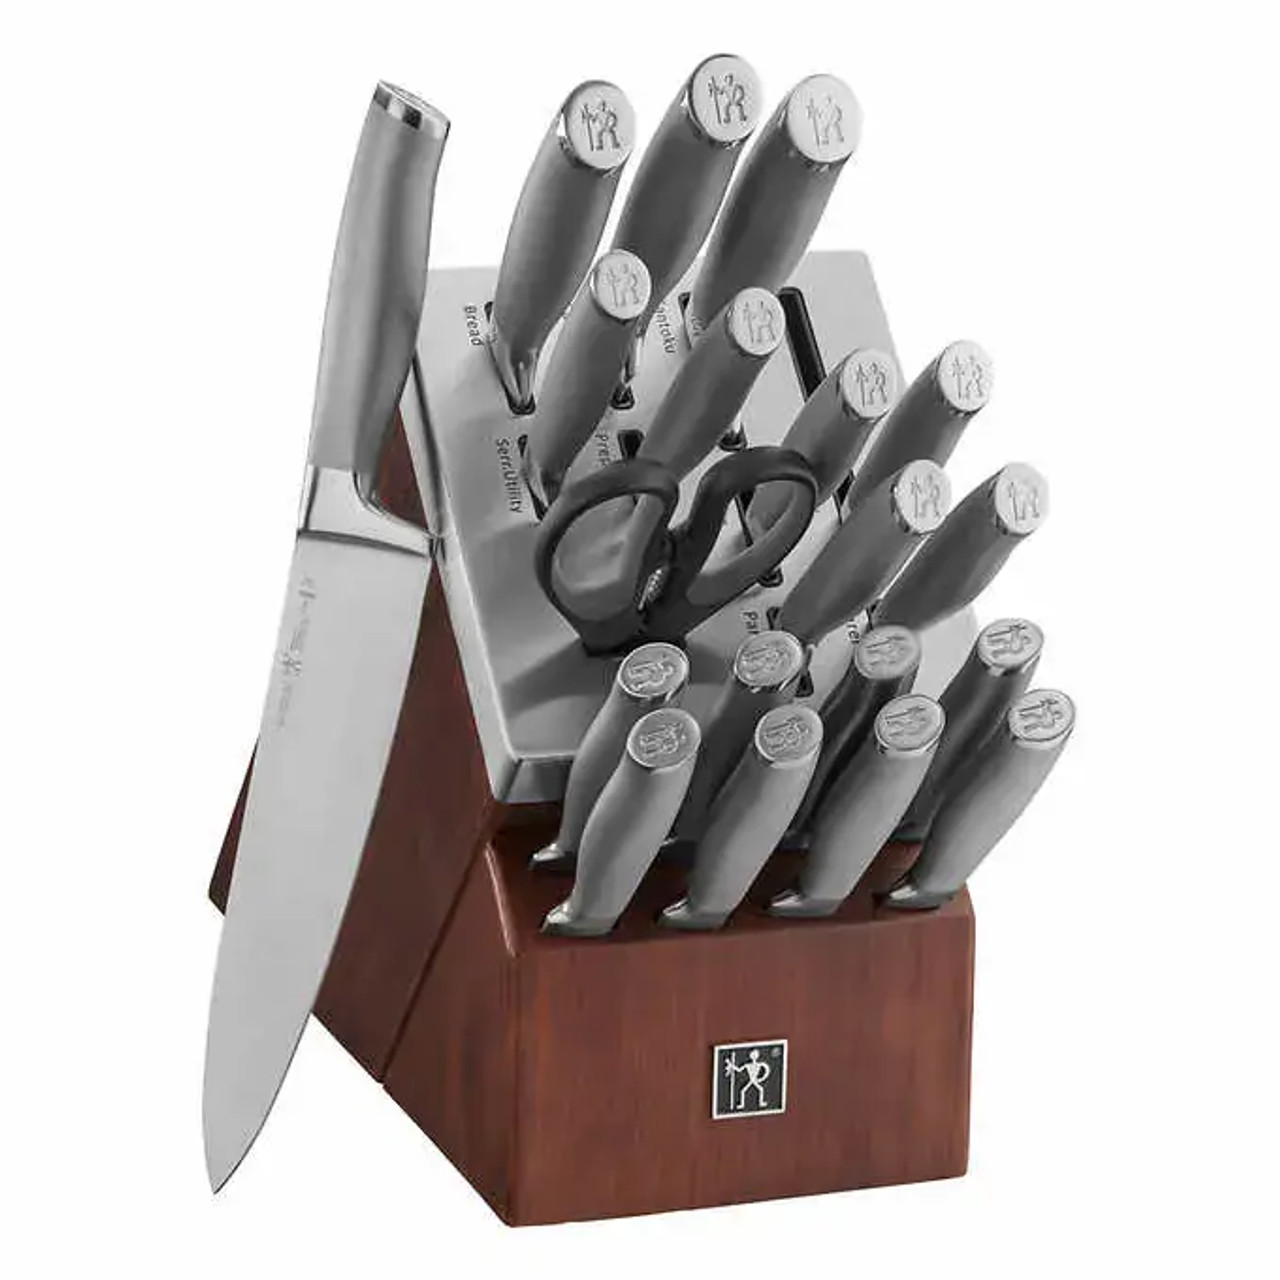 HENCKELS MODERNIST German Stainless Self-sharpening Knife Set, 20-piece-Chicken Pieces